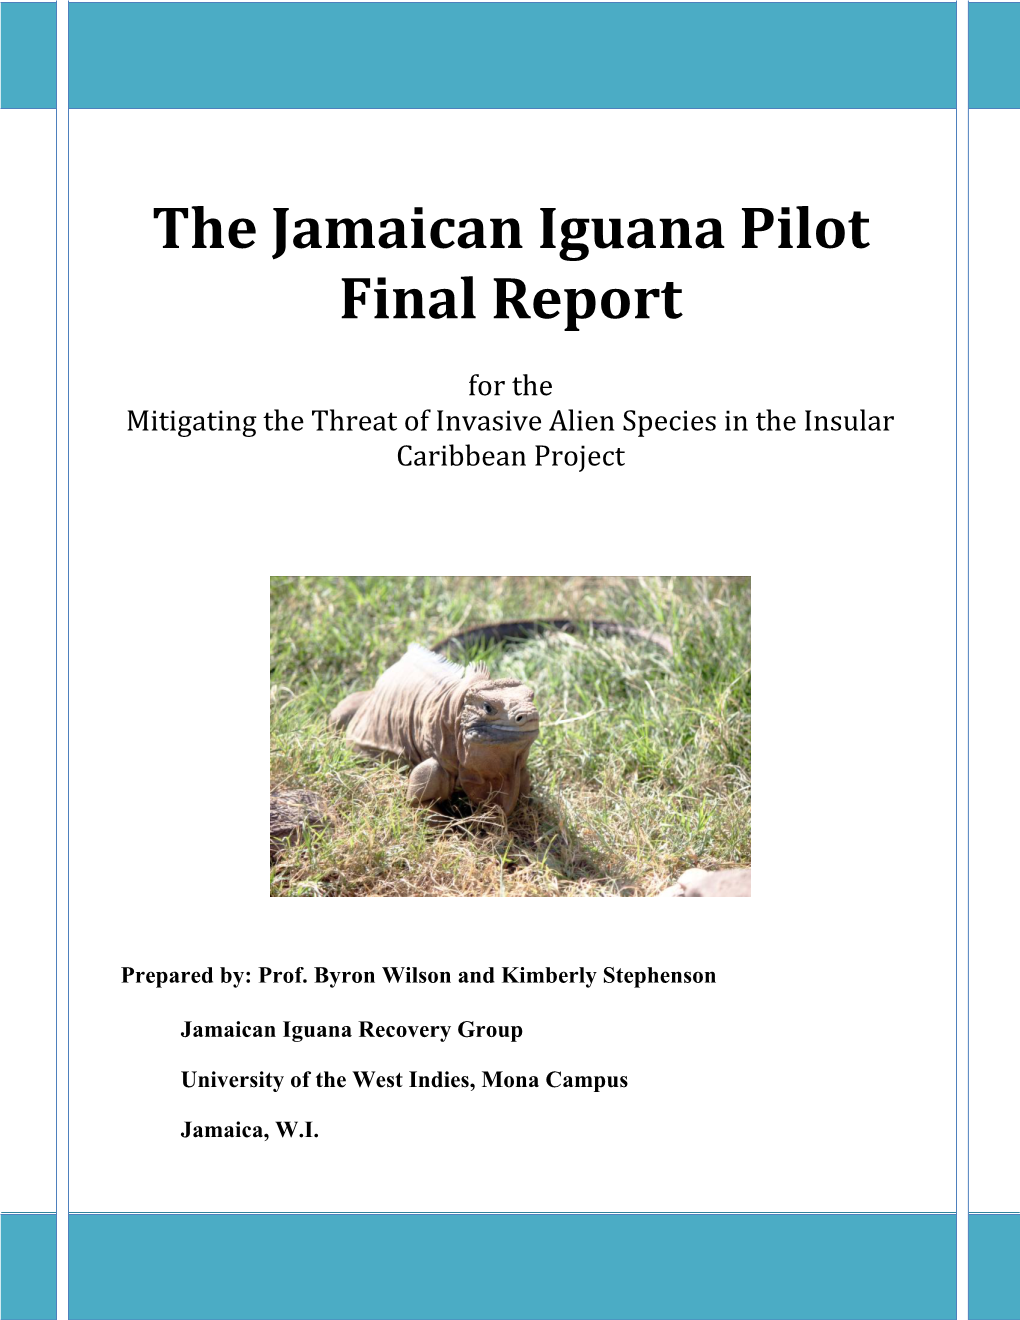 The Jamaican Iguana Pilot Final Report 2014